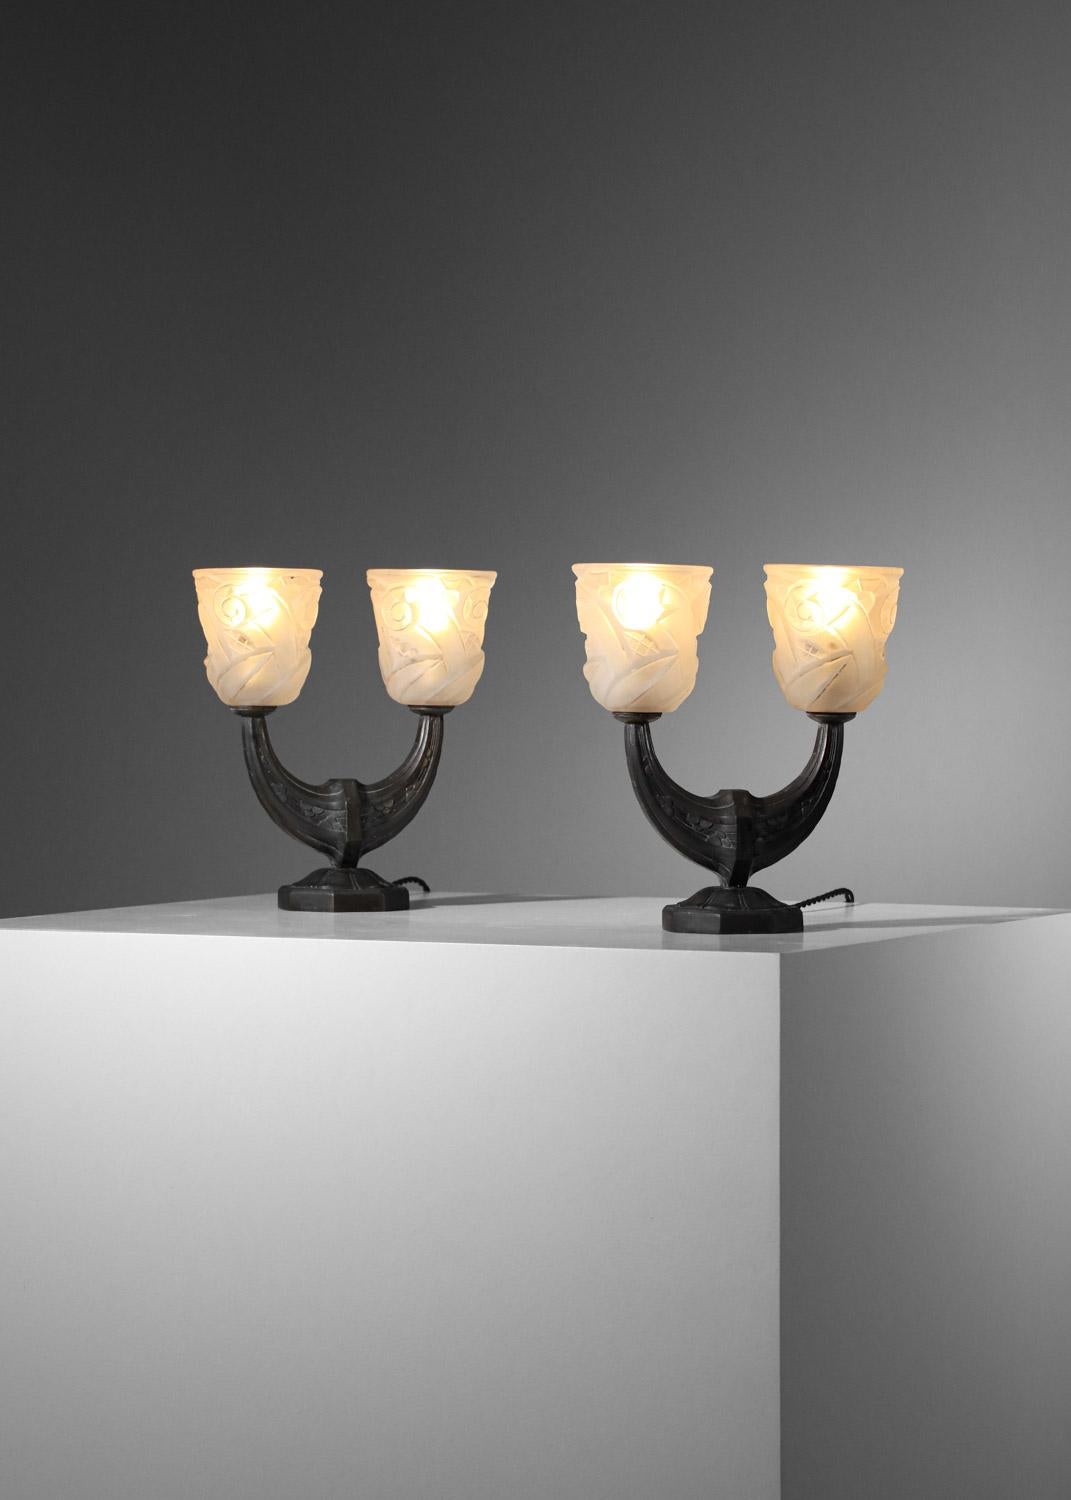 Sehr schönes Paar französischer Art-déco-Nachttischlampen aus den 1930er Jahren. Sockel der Lampen aus massiver Bronze, patiniert und mit typischen Art-Déco-Motiven verziert. Lampenschirm aus weißem, opakem Glas, geformt in Form einer Tulpe mit